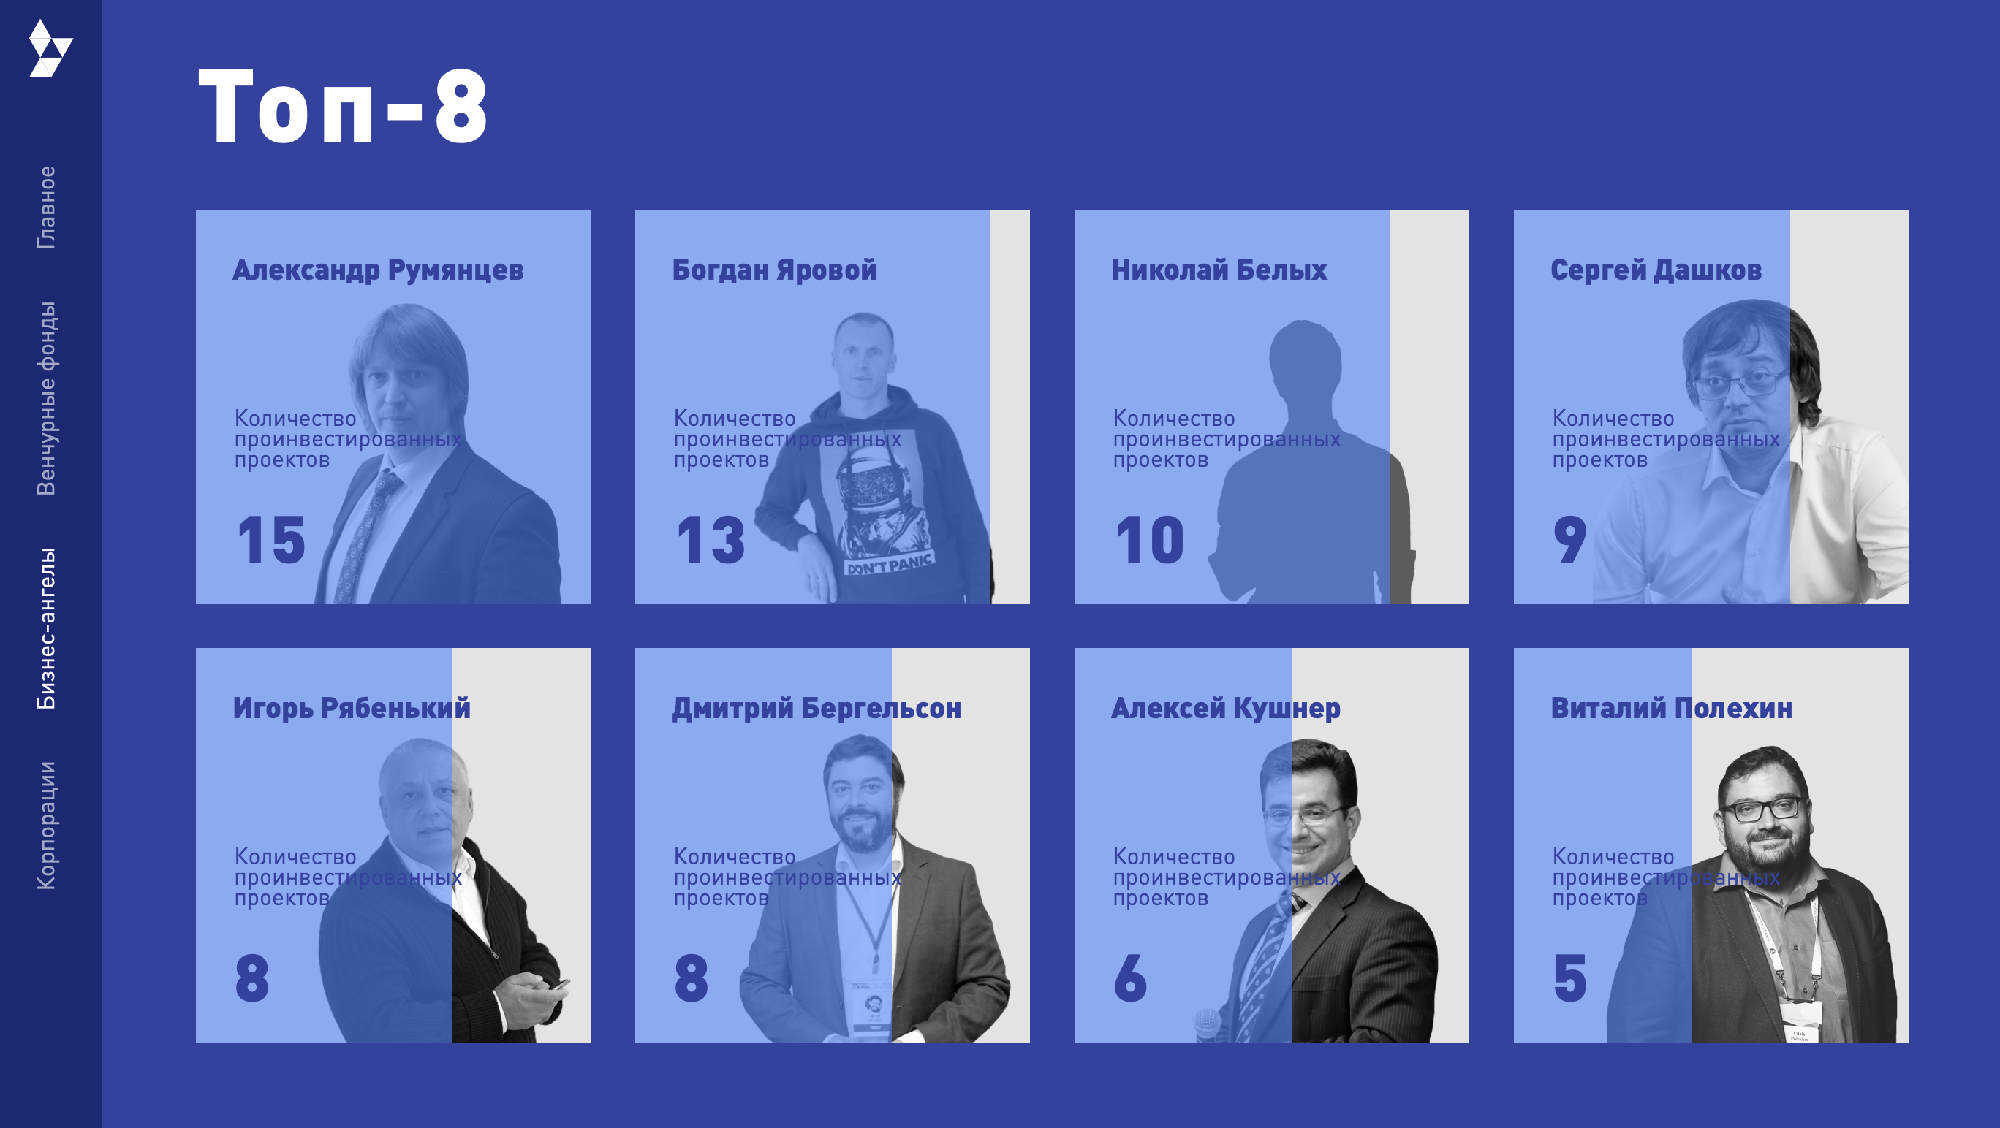 Топ-8 российских бизнес-ангелов по версии РВК. В рейтинге можно посмотреть средний чек инвестора, узнать, сколько он вложил за год и чем известен